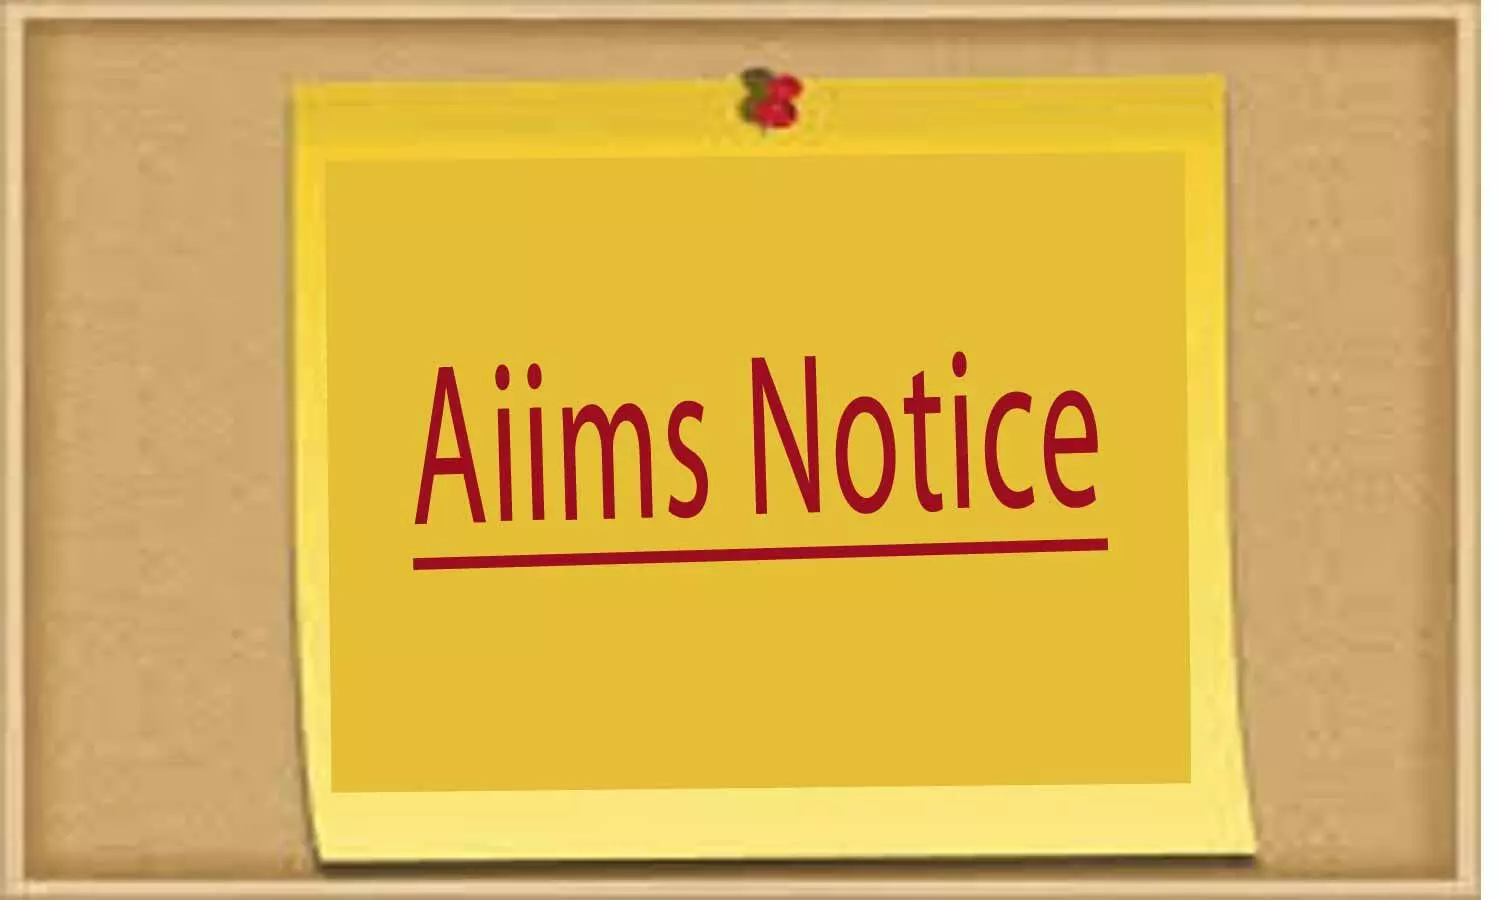 INI-CET 2020: AIIMS issues corrigendum for common Sponsorship certificate